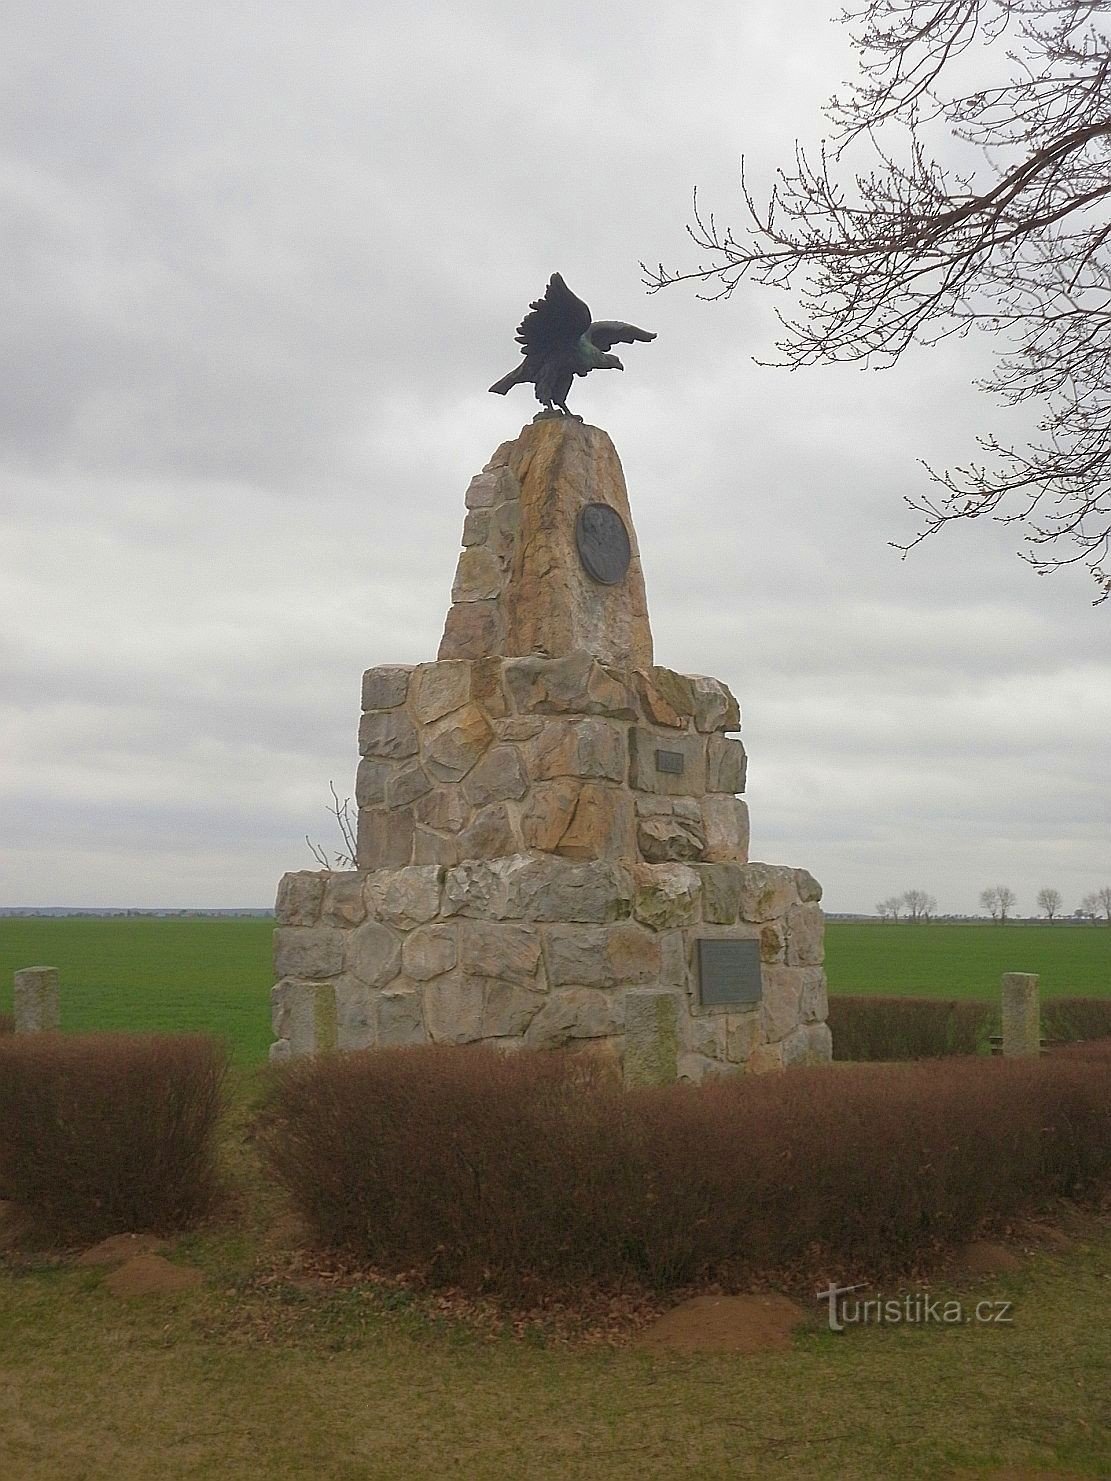 Monumento al centenario de la guerra de liberación contra Napoleón